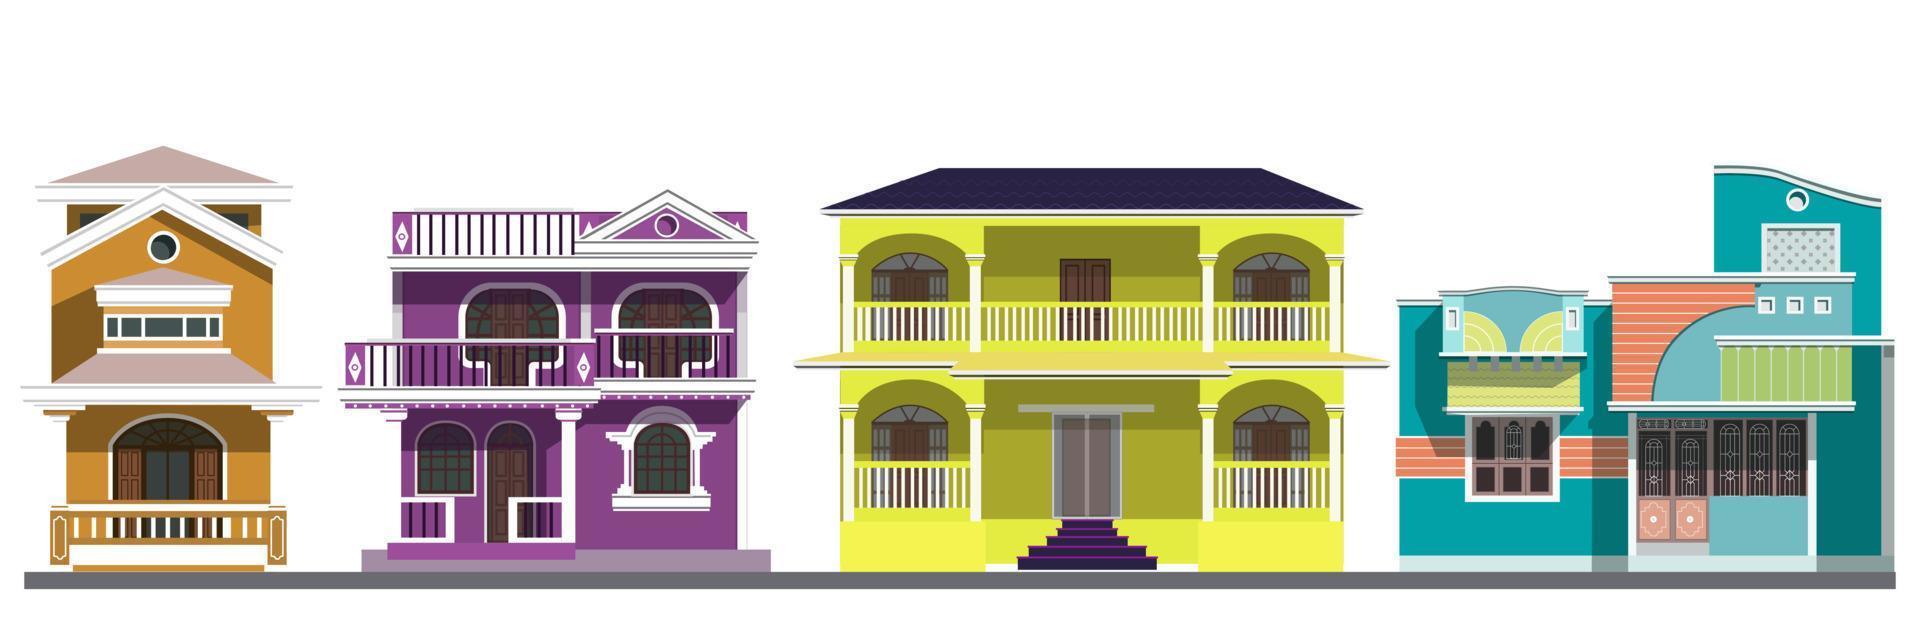 ein satz von vier häusern in indien auf weißem hintergrund ist eine flache vektorillustration. Farbige Häuser mit mehreren Etagen in Indien auf weißem Hintergrund. flache Abbildung. vektor